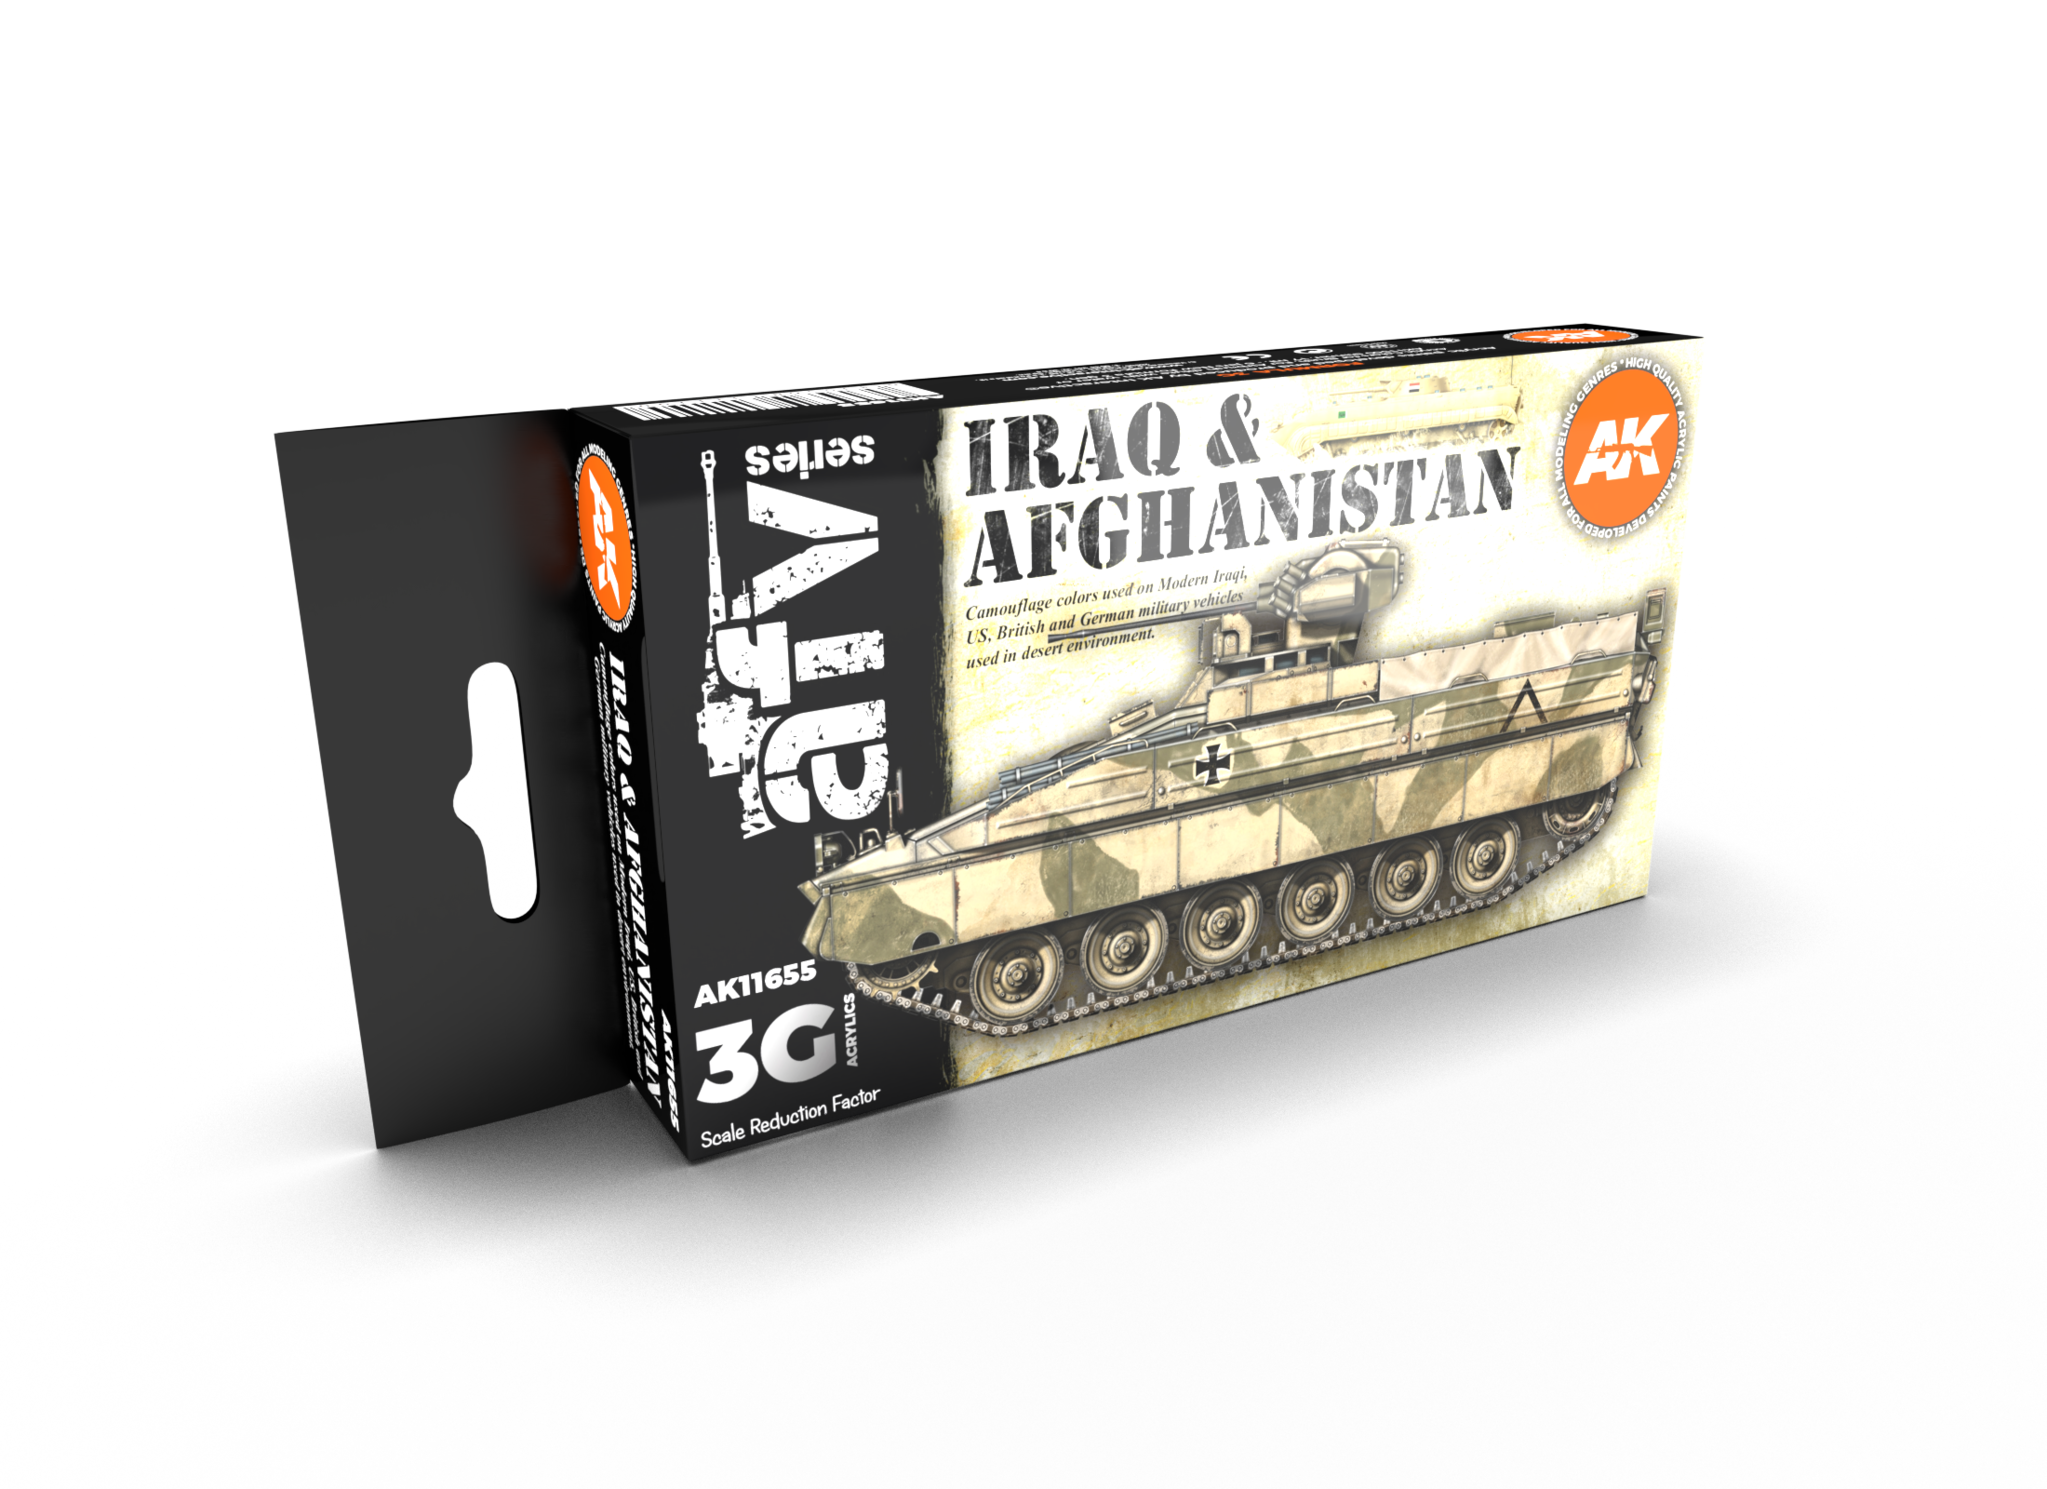 AK-Interactive Iraq & Afghanistan Set - AK-Interactive - AK-11655